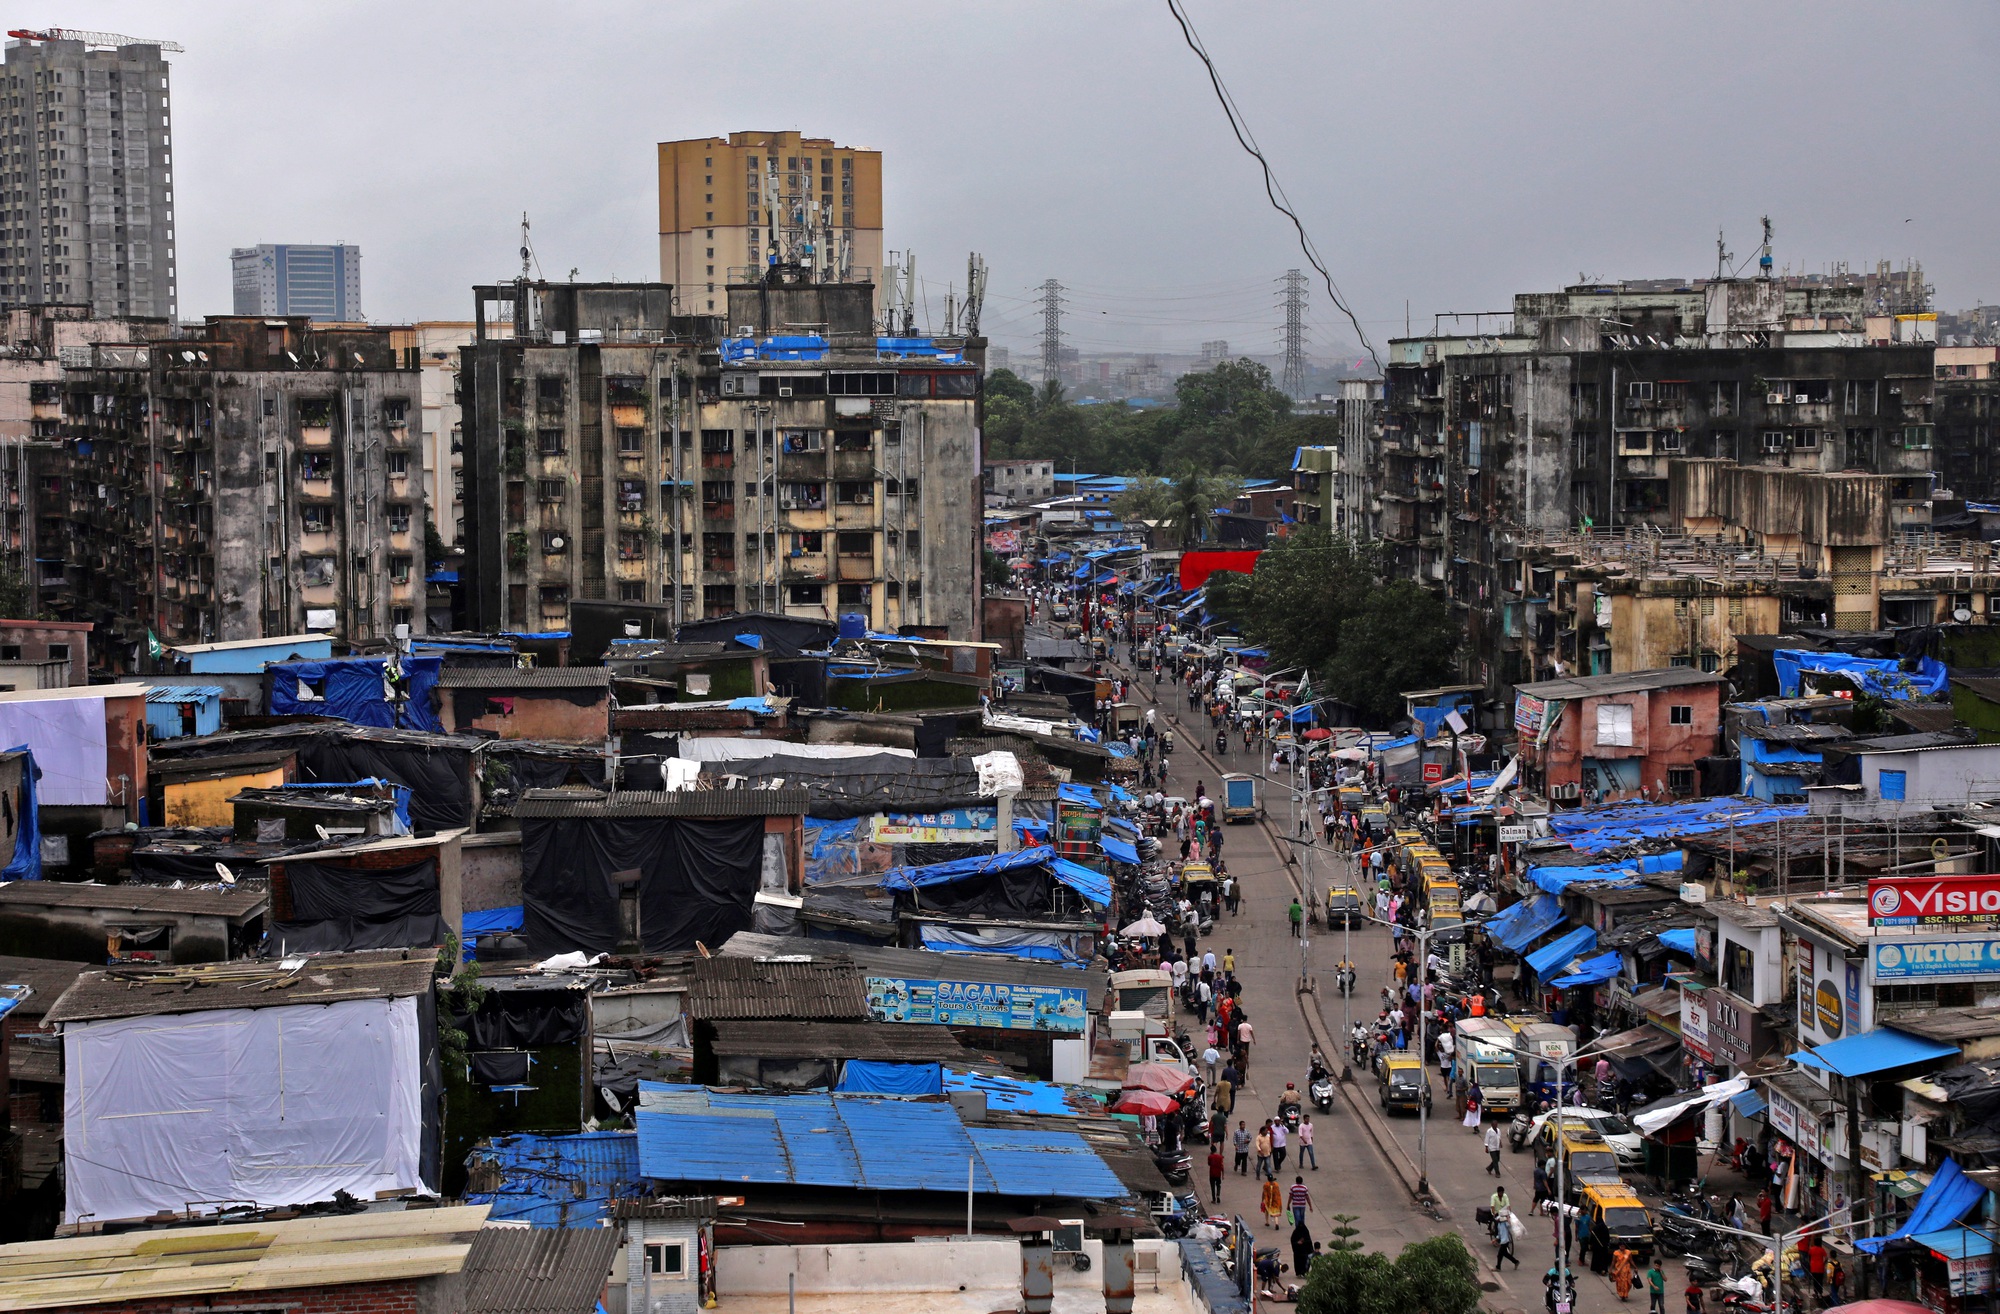 Dự án xóa sổ khu ổ chuột Dharavi: người dân Ấn Độ lo lắng về tương lai - Ảnh 1.